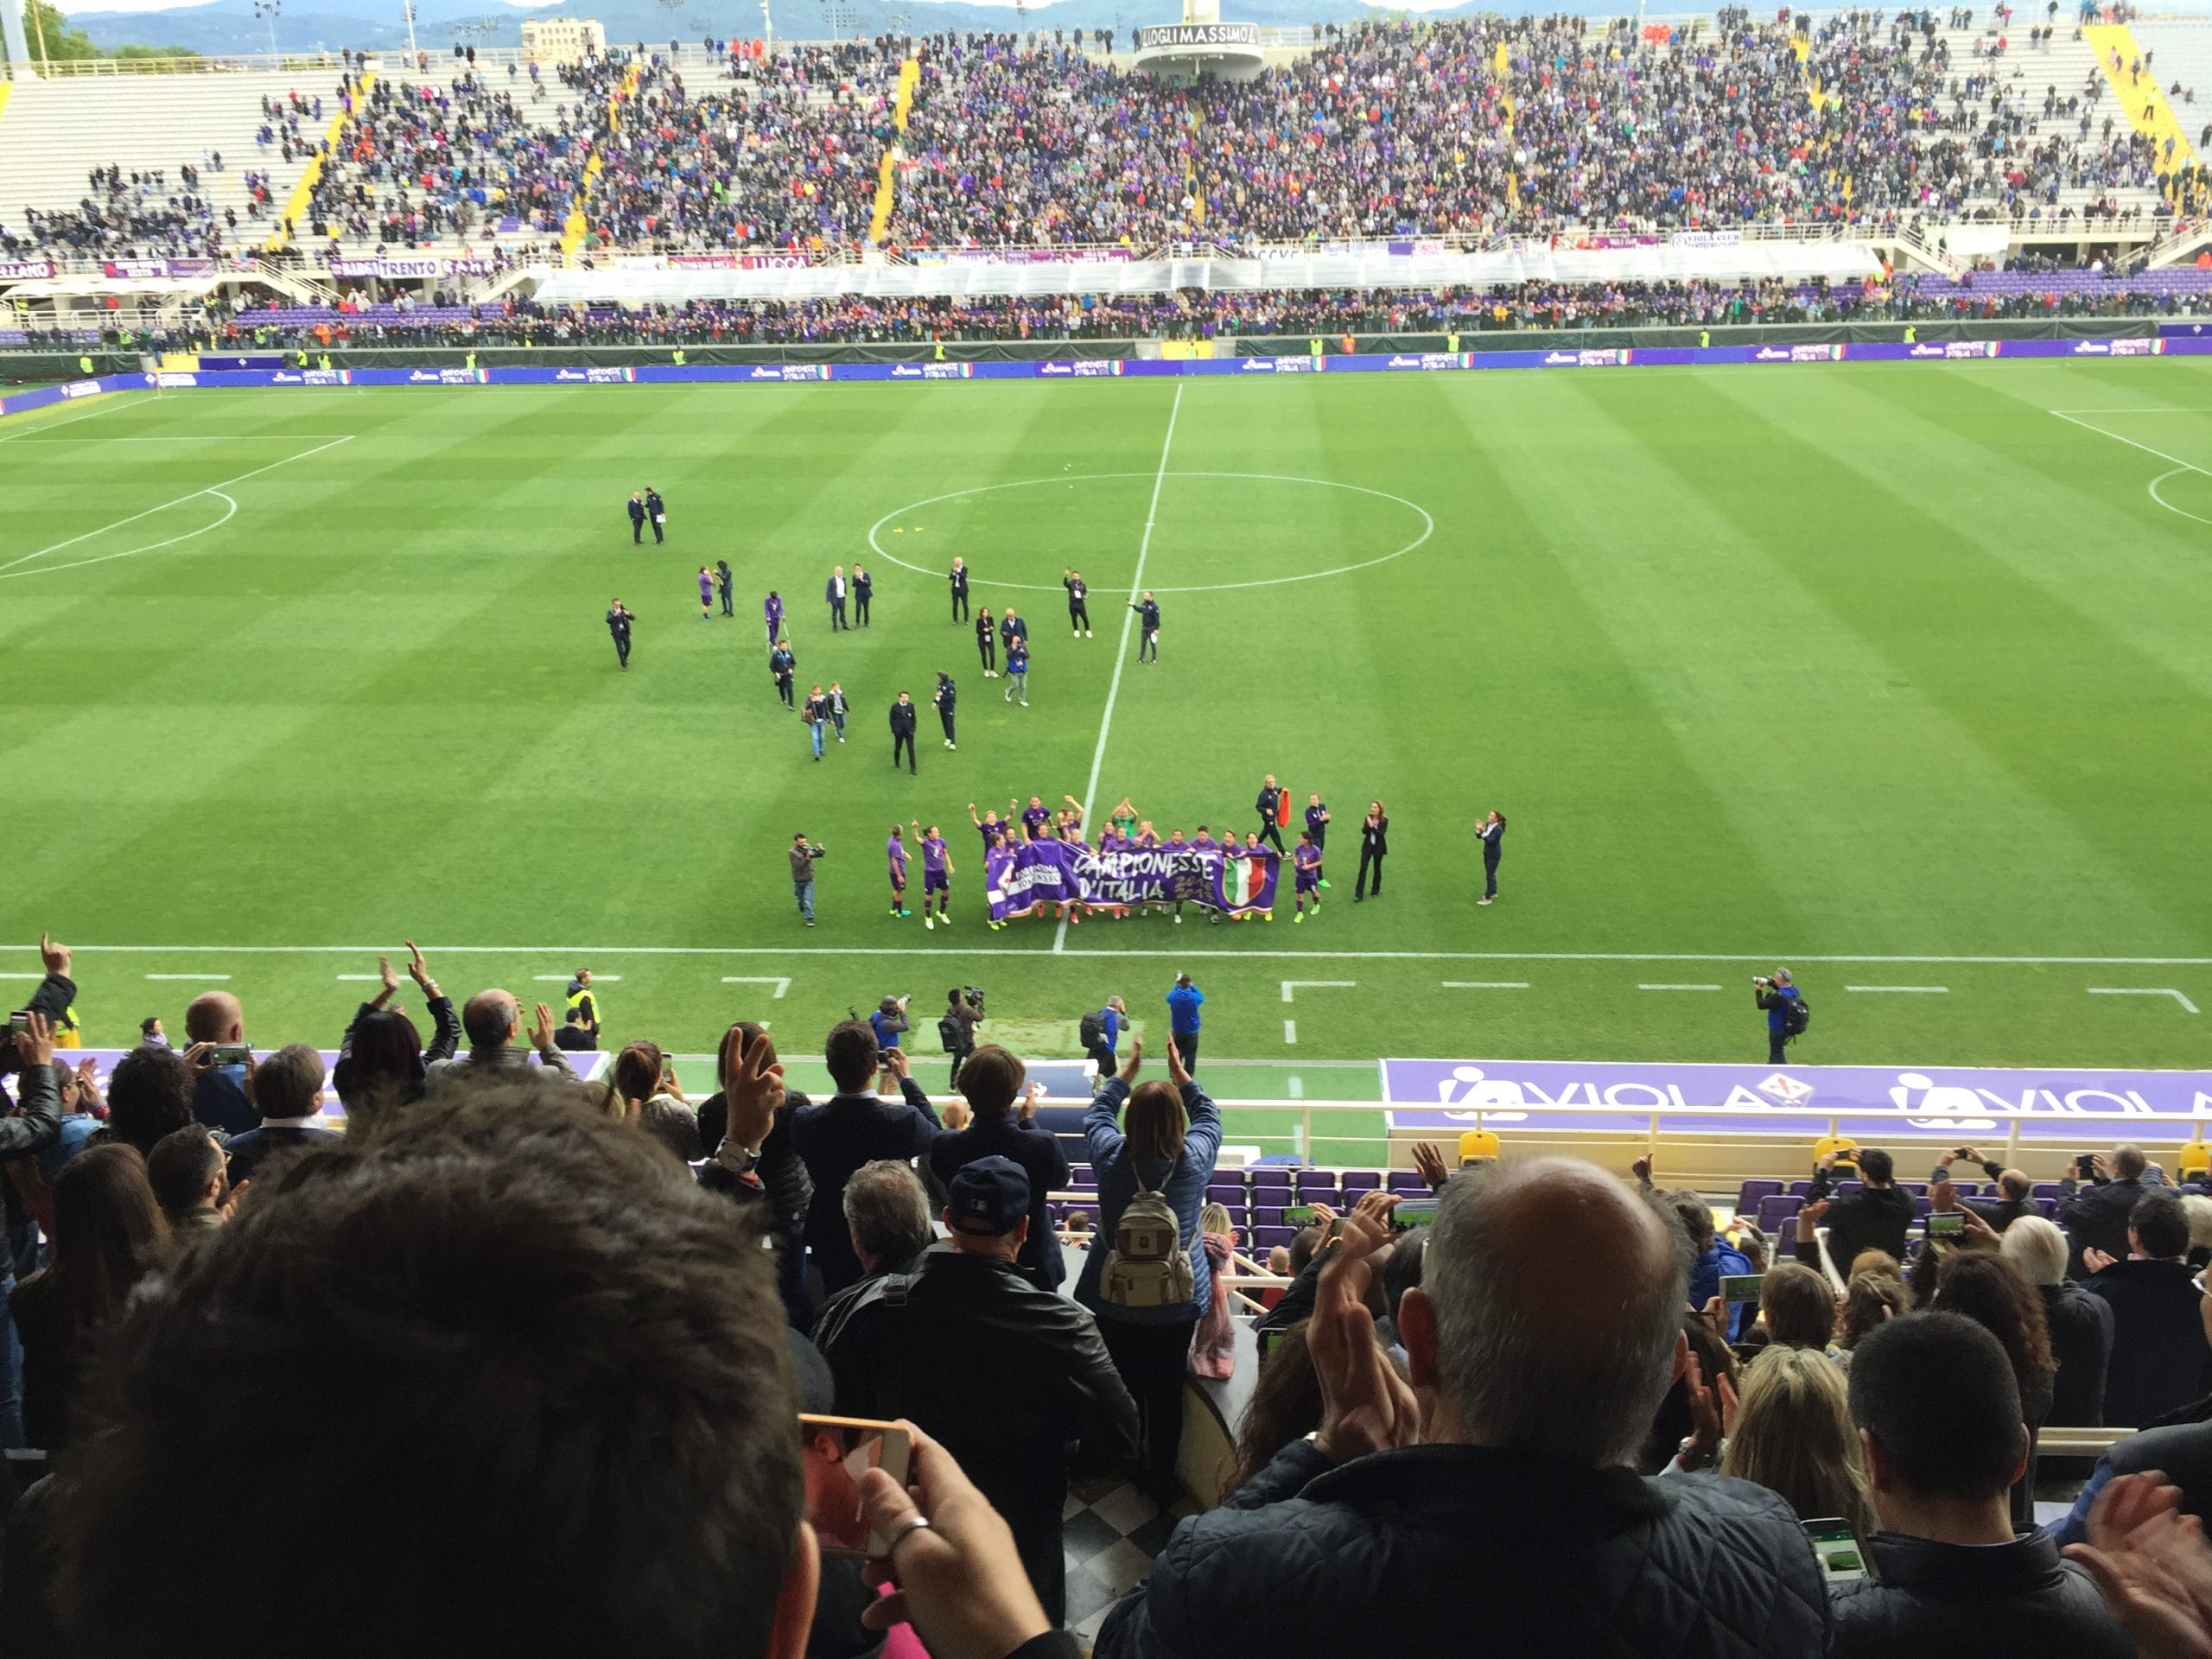 Calcio:Fiorentina, morto storico leader ultrà